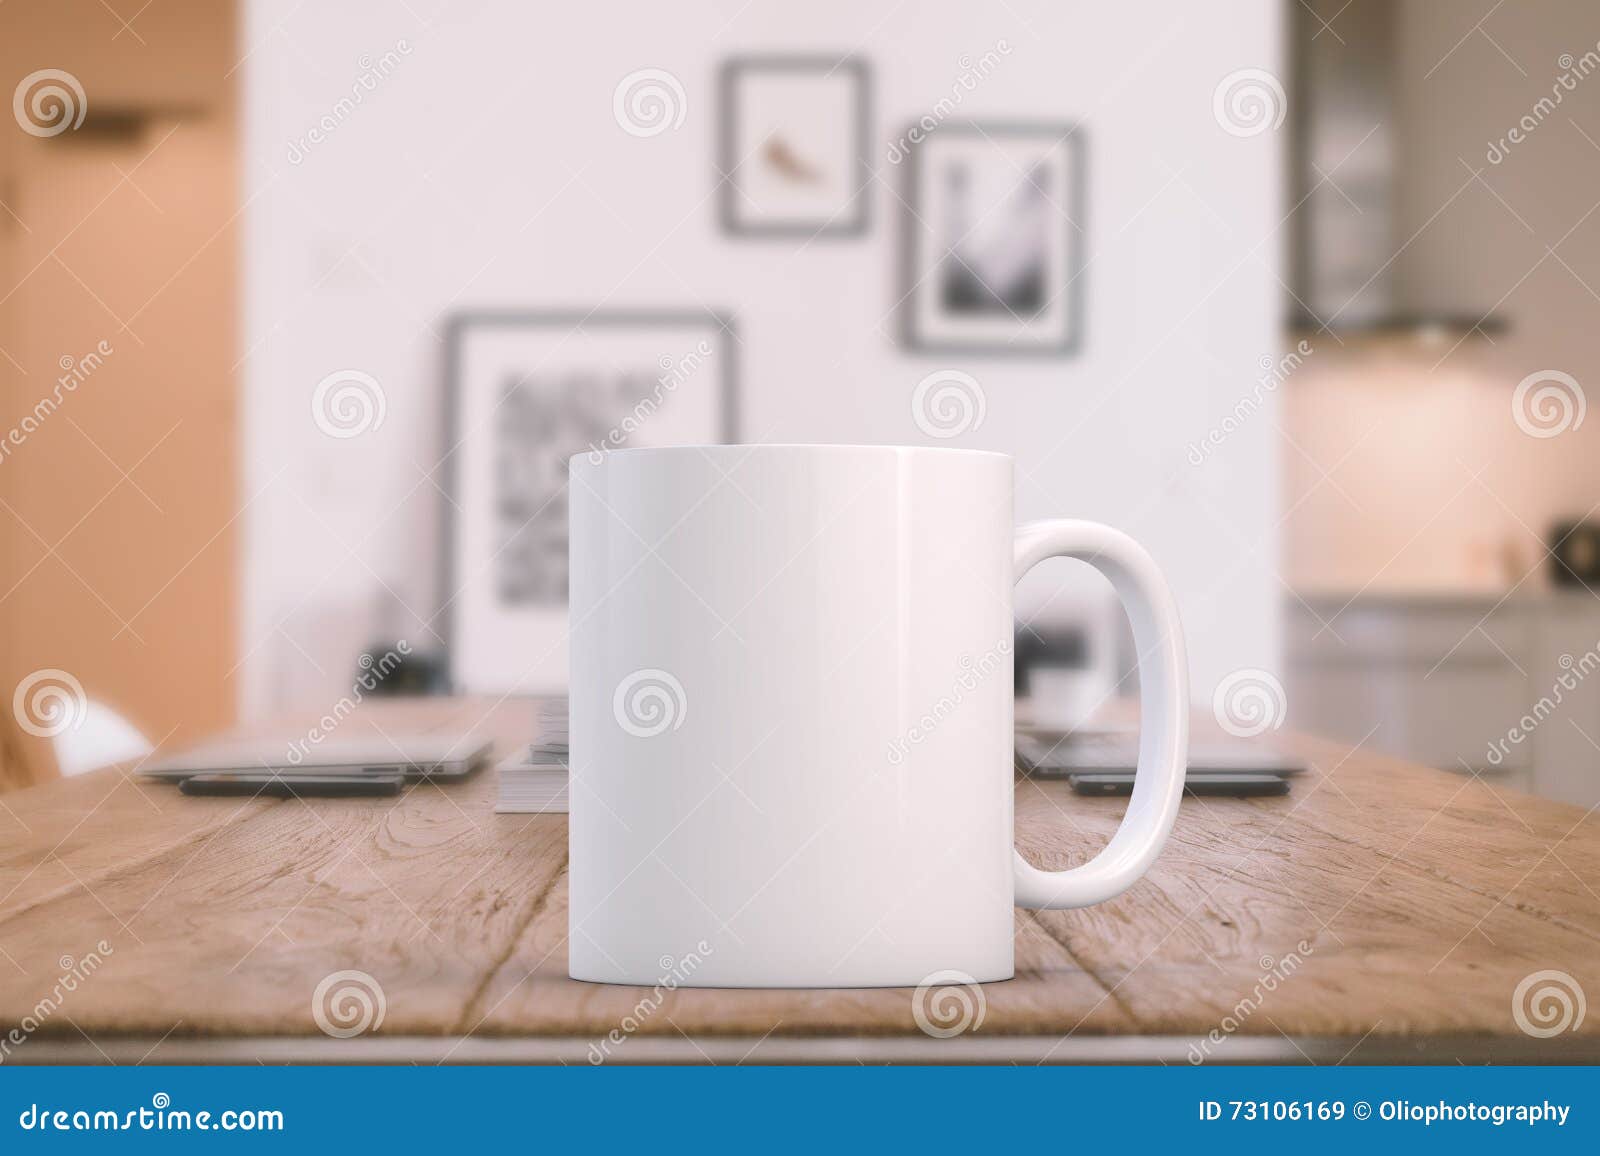 styled stock mug mockup image